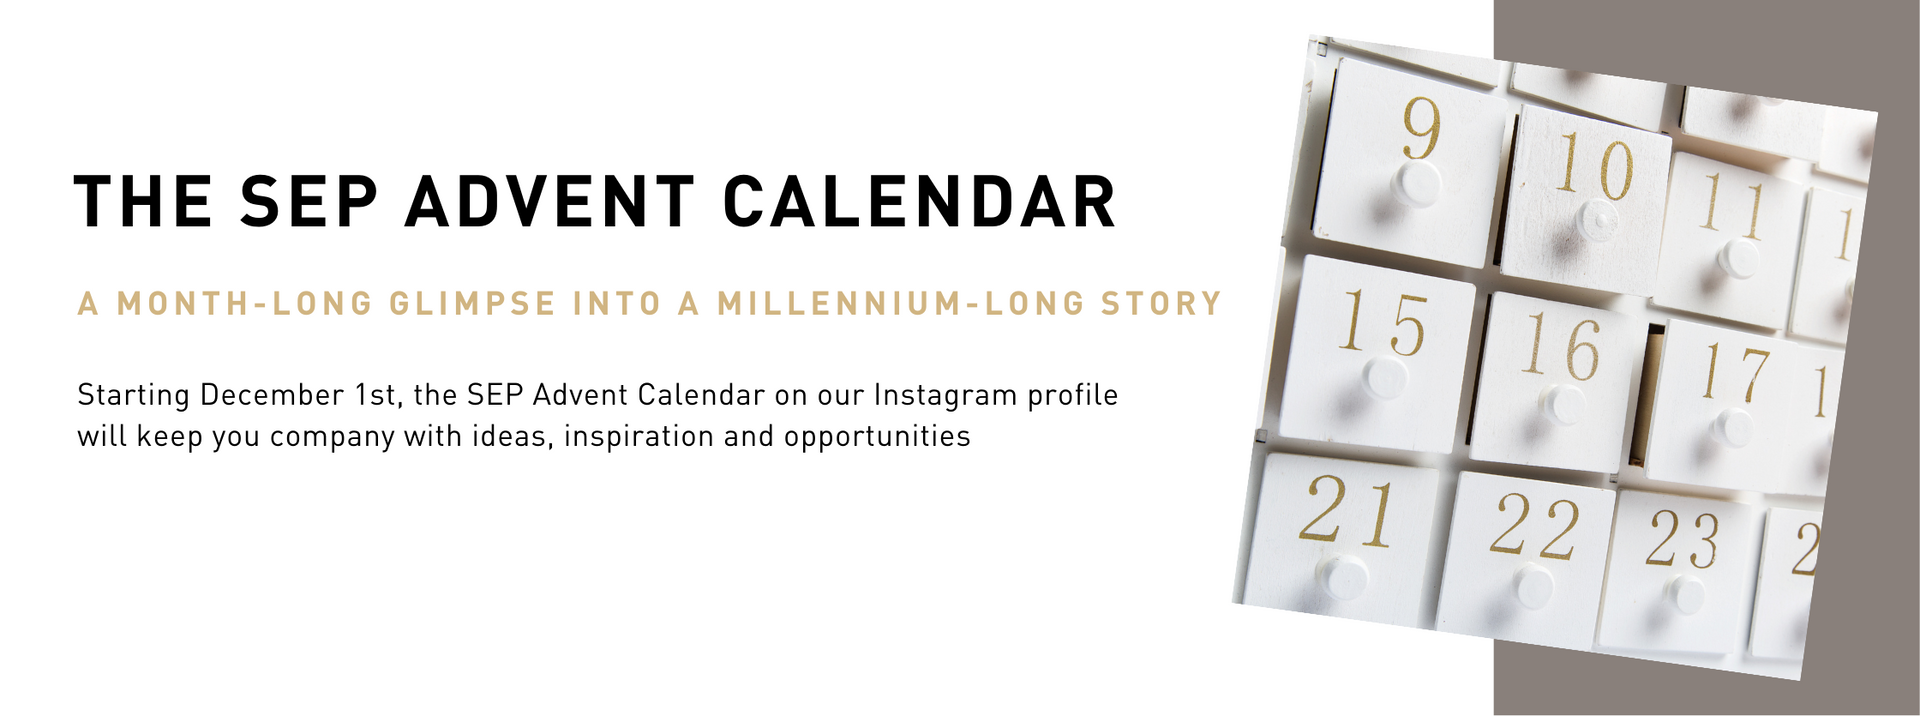 The SEP Advent Calendar: a month-long glimpse into a millennium-long story.